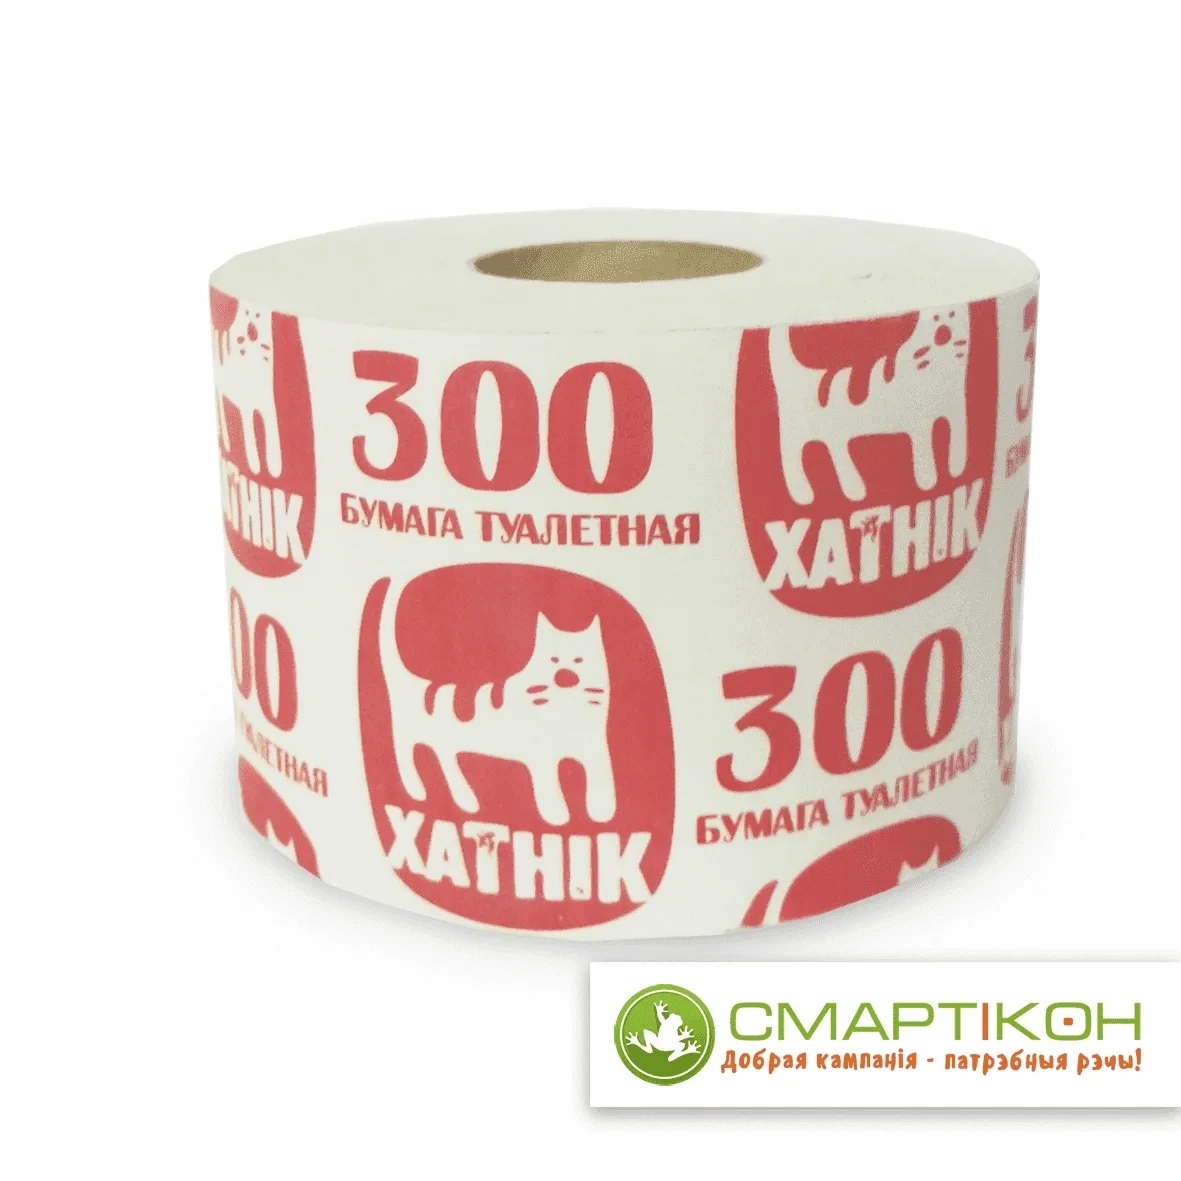 Туалетная бумага Хатнiк 300.